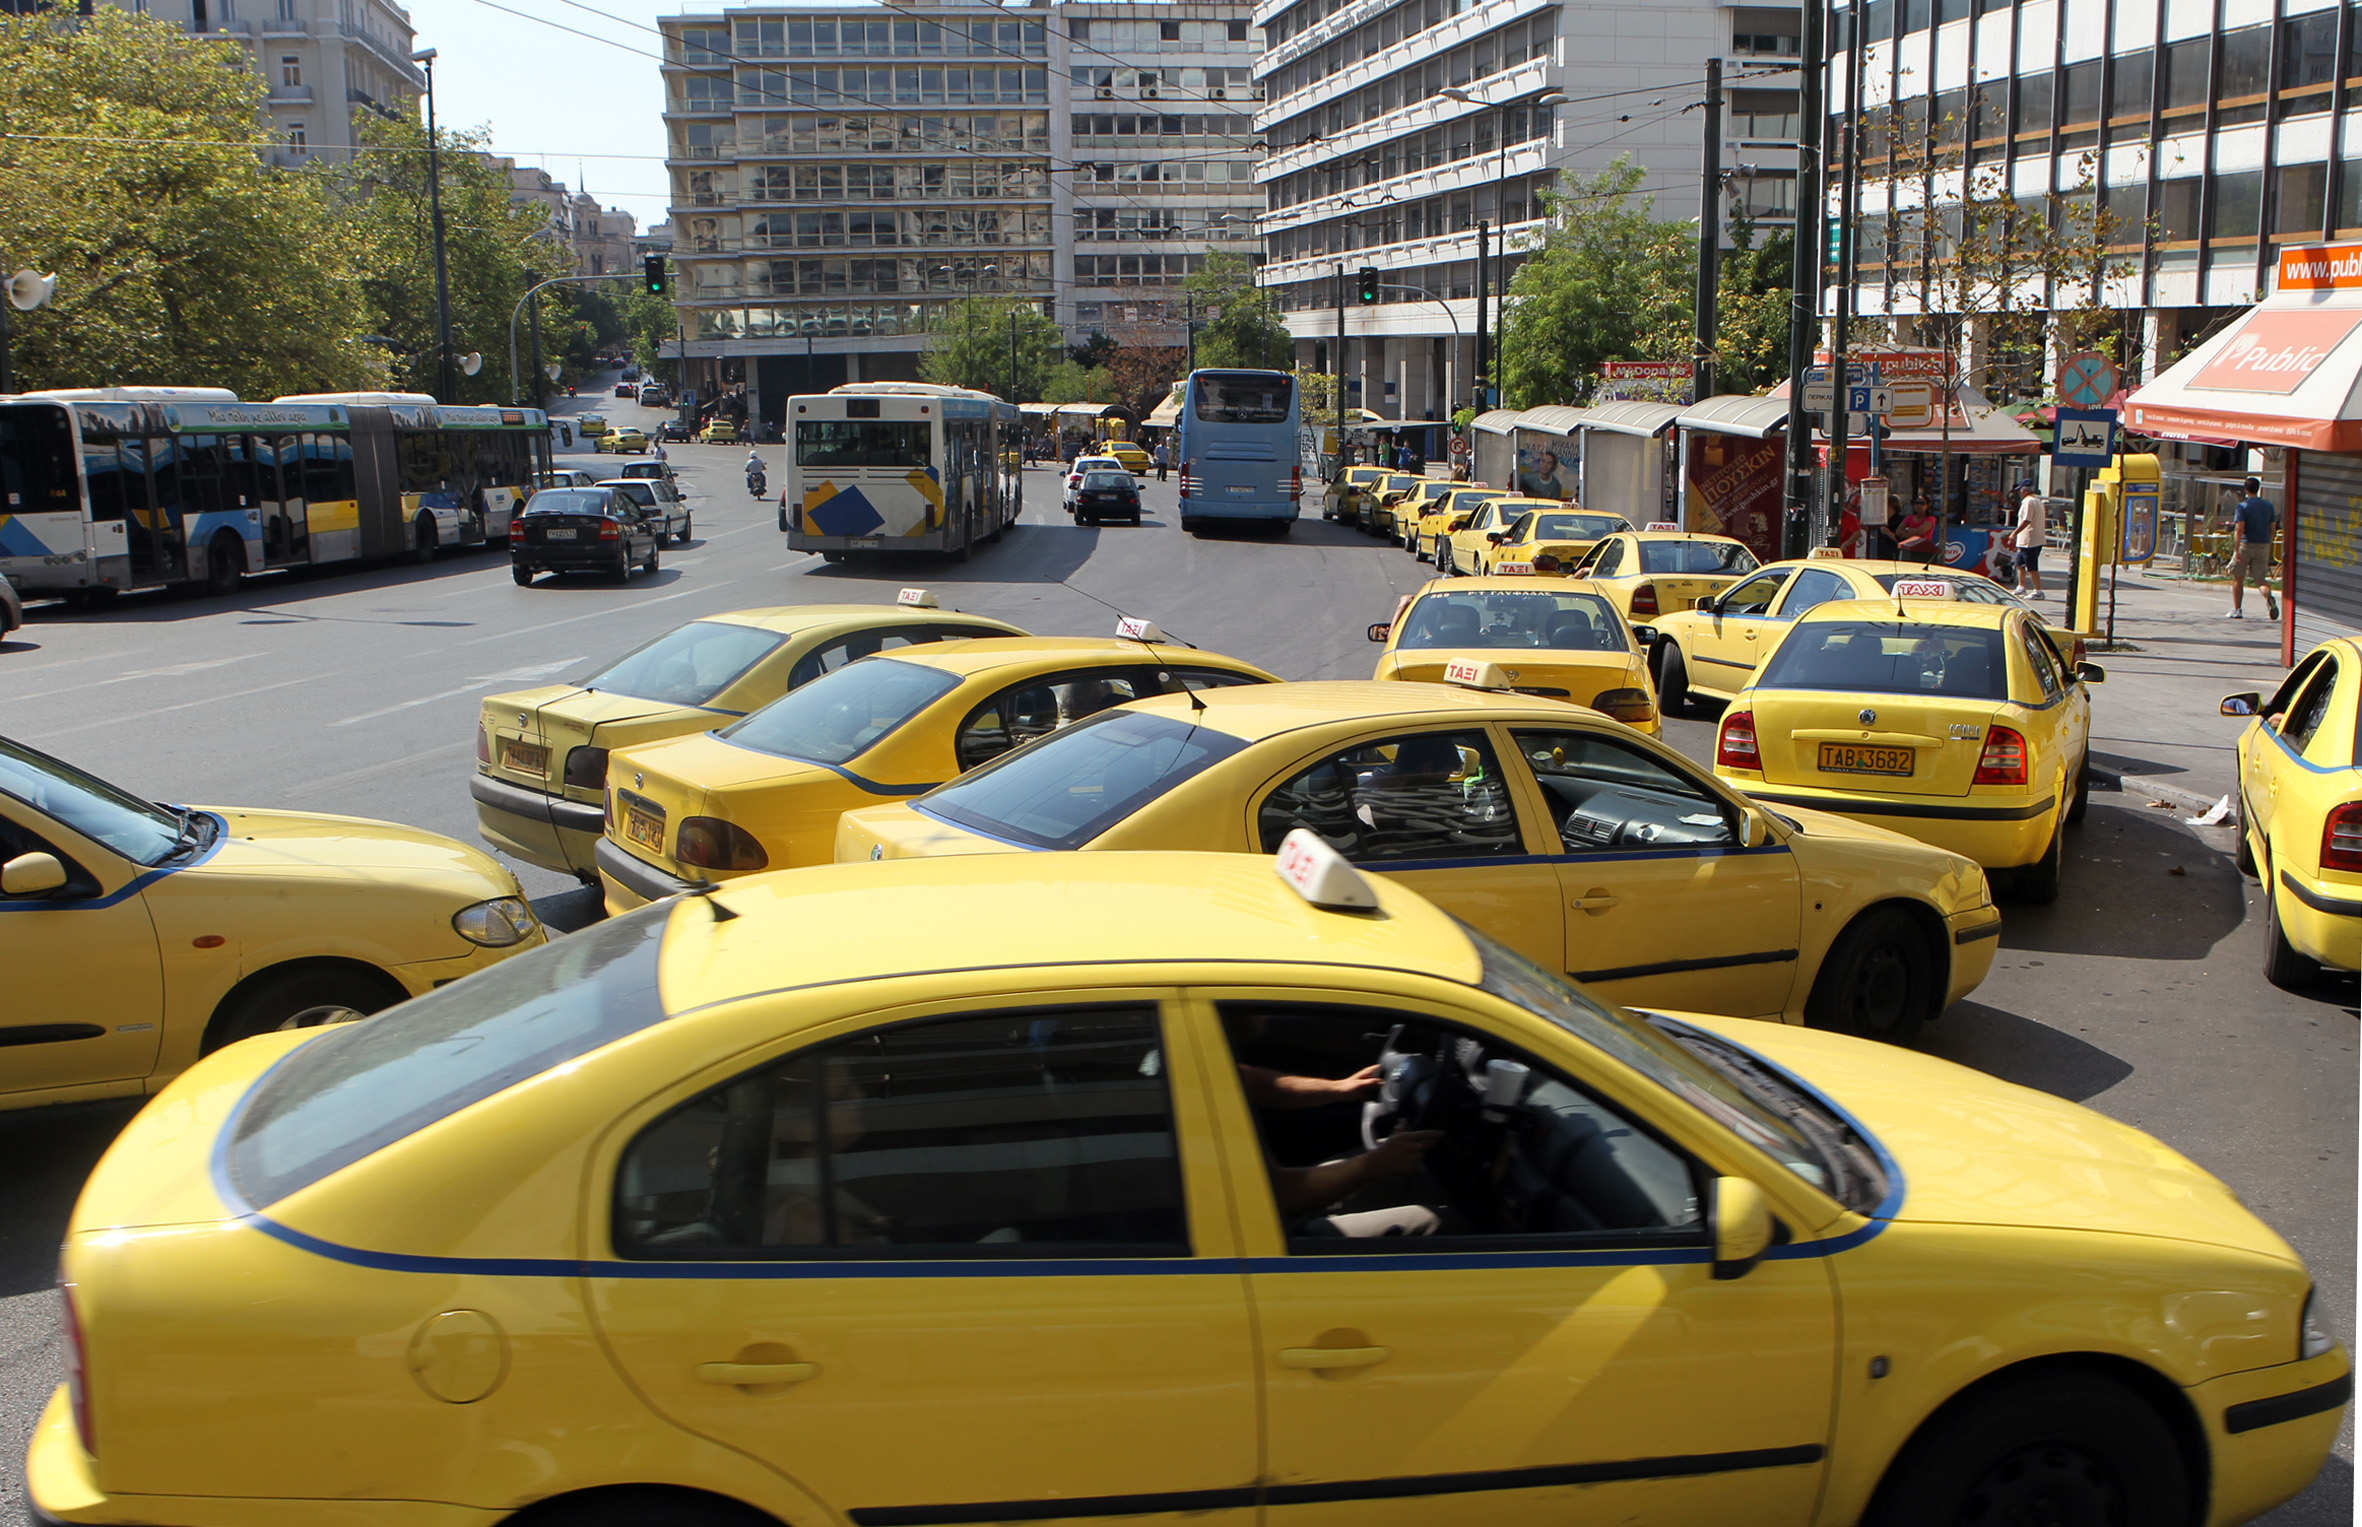 Τα “γερασμένα” ταξί απειλούν τη δημόσια υγεία